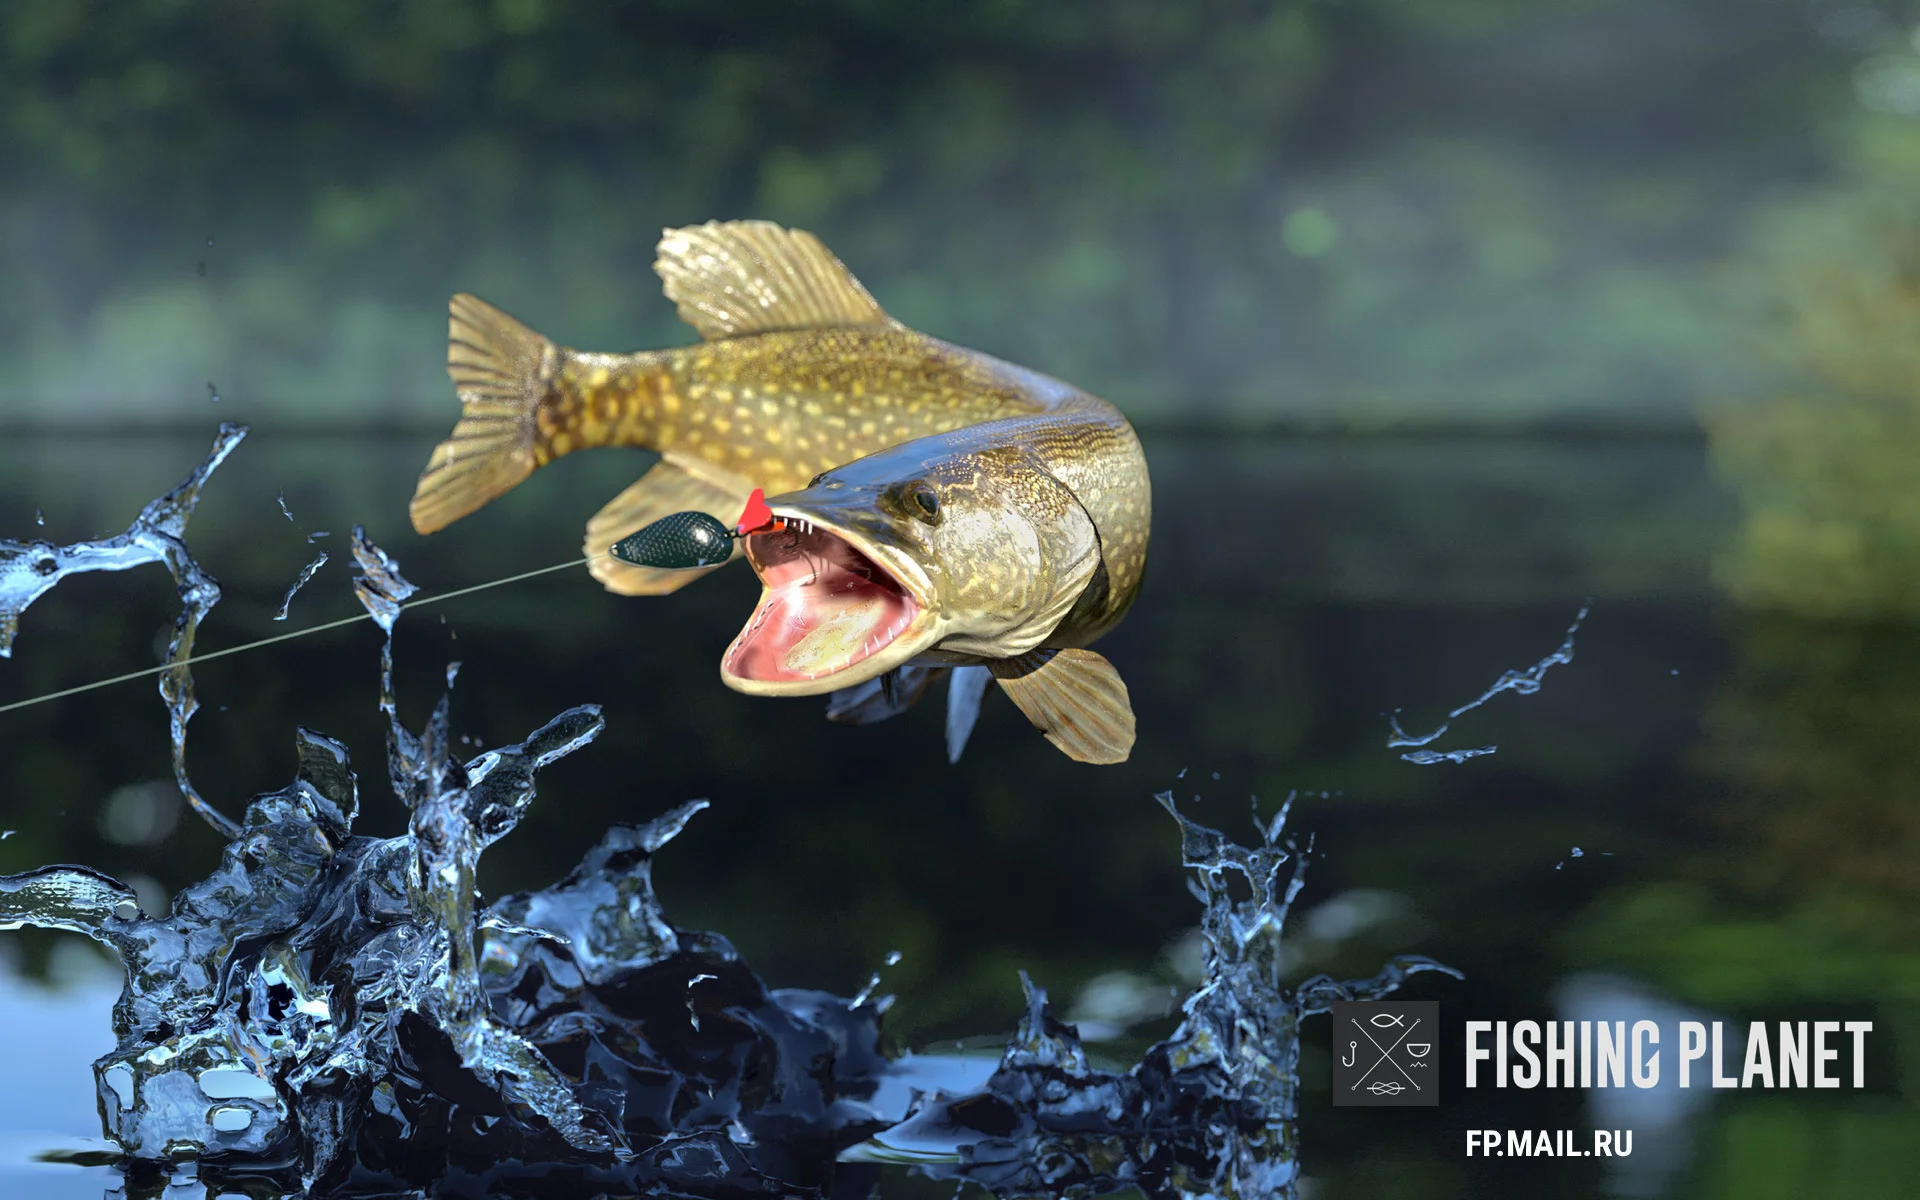 Симулятор рыбалки Fishing Planet вышел в Игровом центре Mail.Ru - фото 1